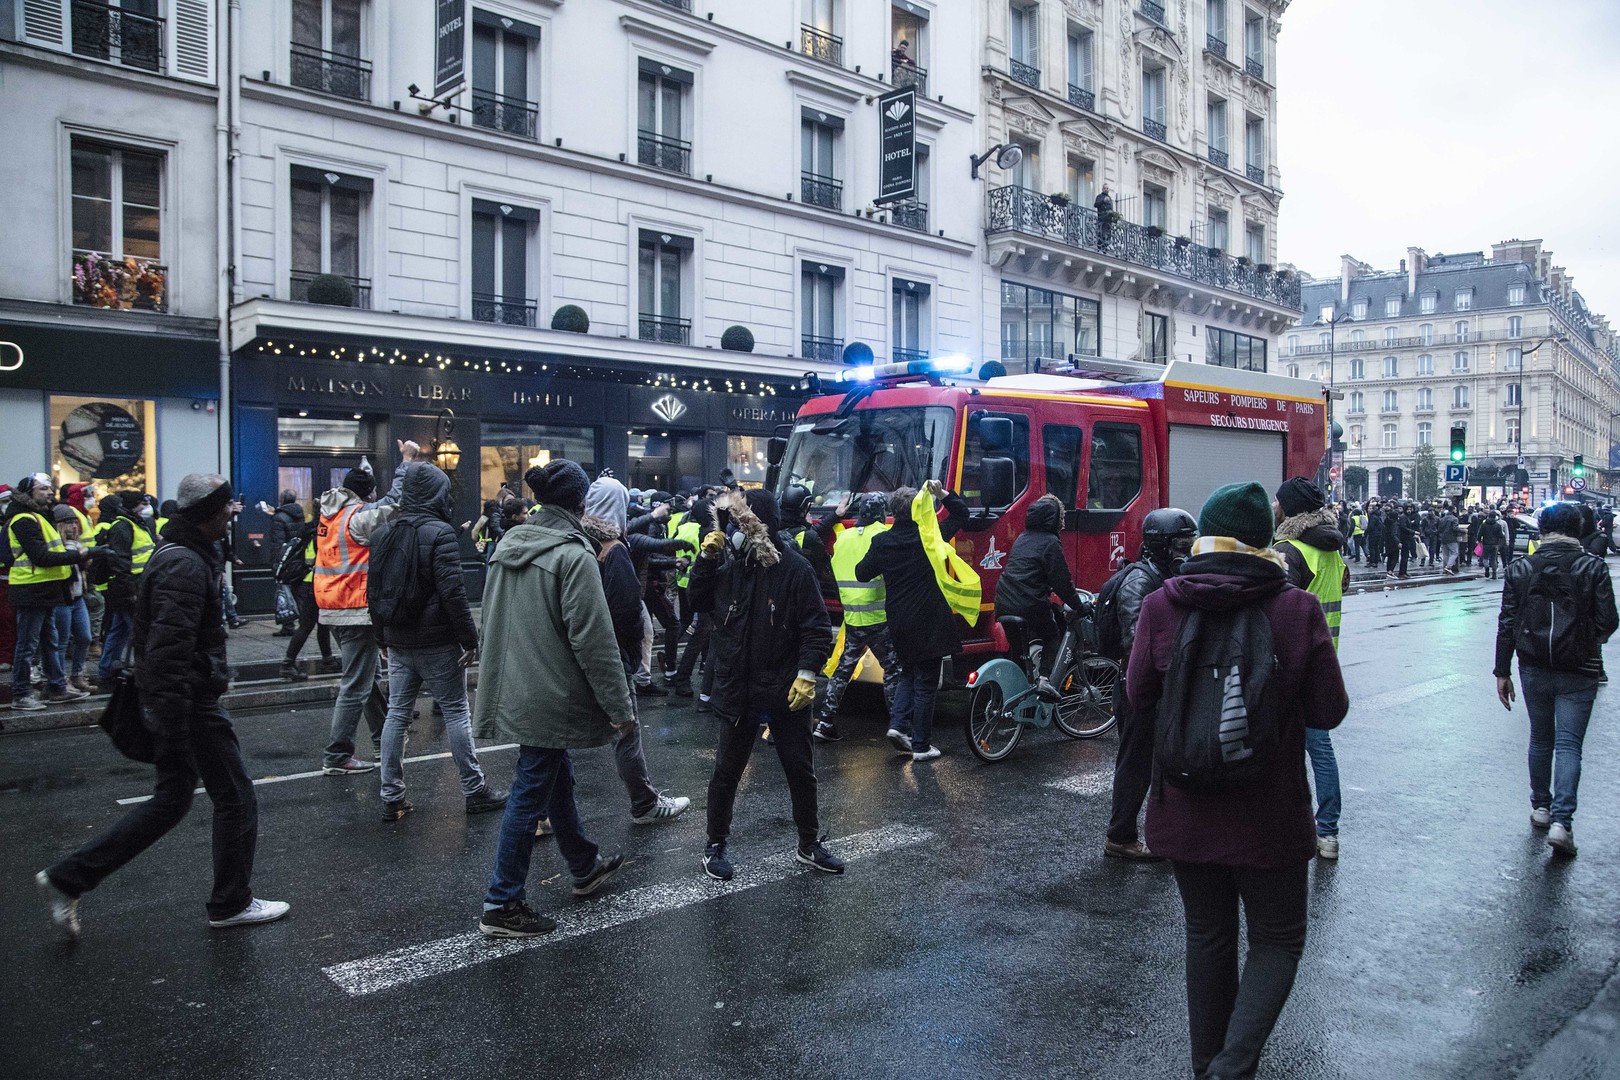 Frankreich: Der wahre Brandstifter trägt Maßanzug